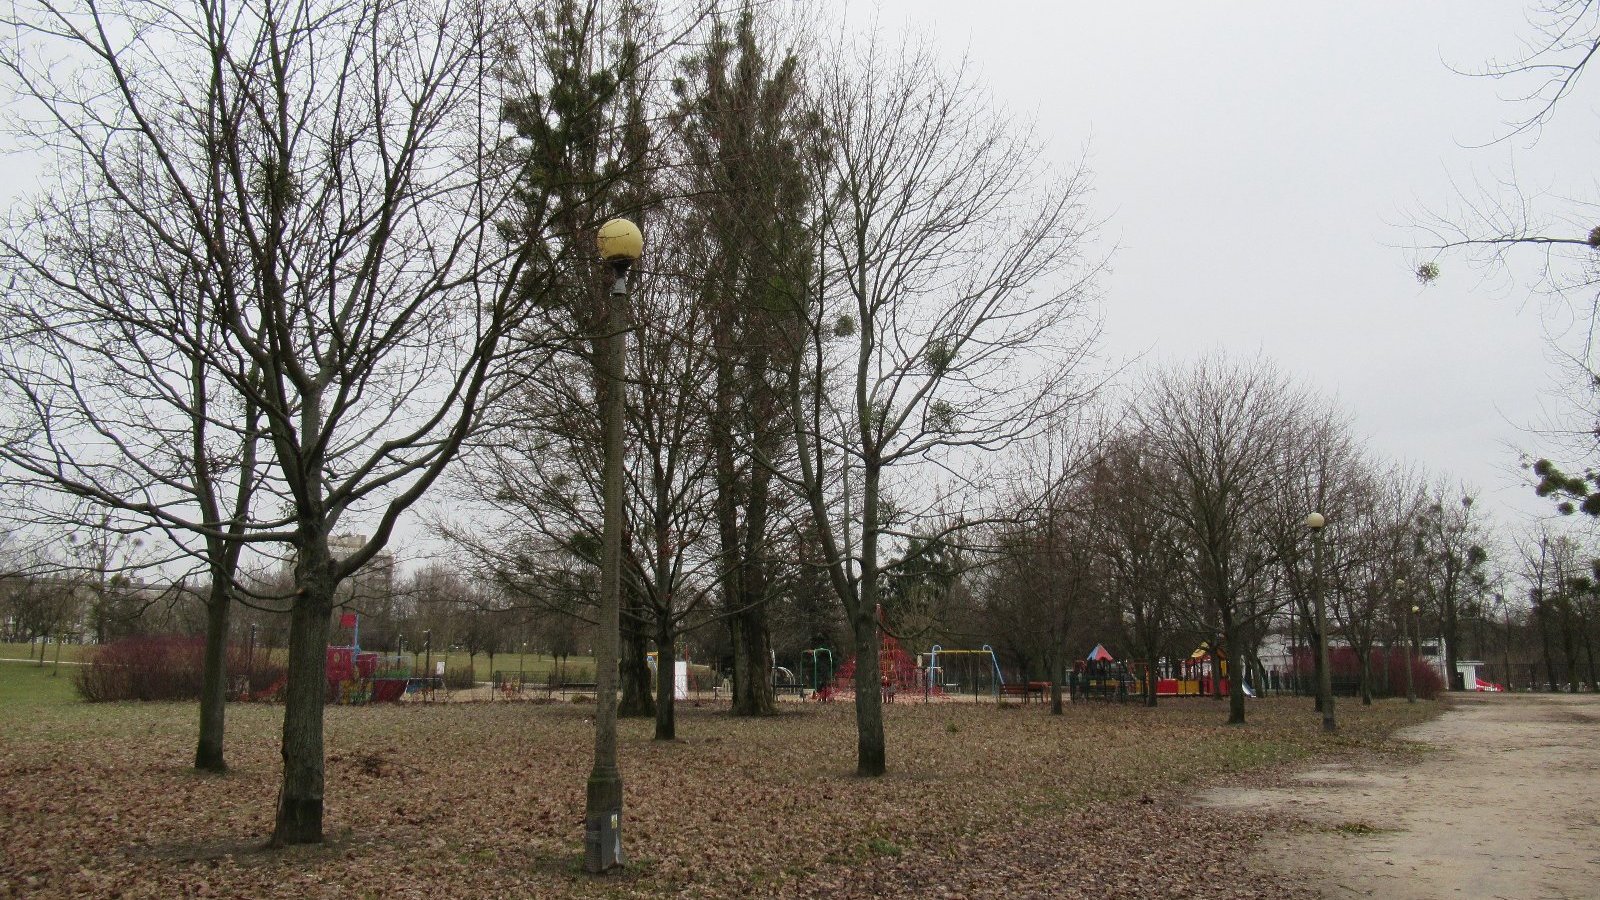 Zdjęcie przedstawia drzewa i plac zabaw w parku.